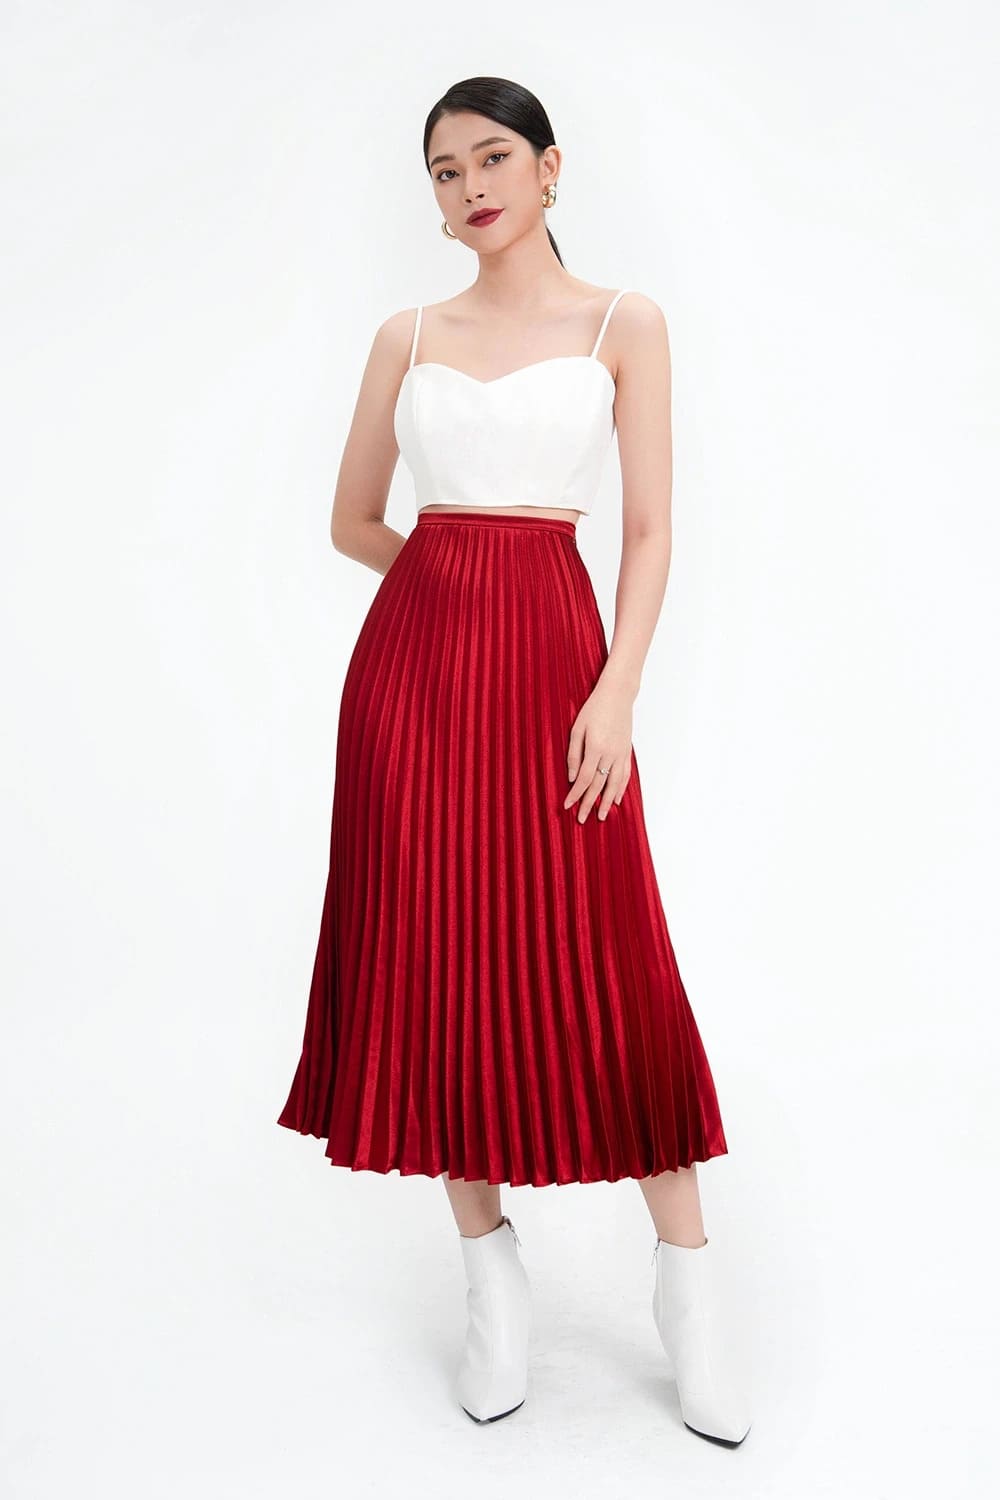 VENN Store - ❤️ Set áo đỏ+ chân váy maxi trắng xếp tầng. ❤️ 👒 Em này lên  dáng dễ thương cực kì, nhìn phát iu ngay luôn😀 🌿 Size: dưới 55kg (